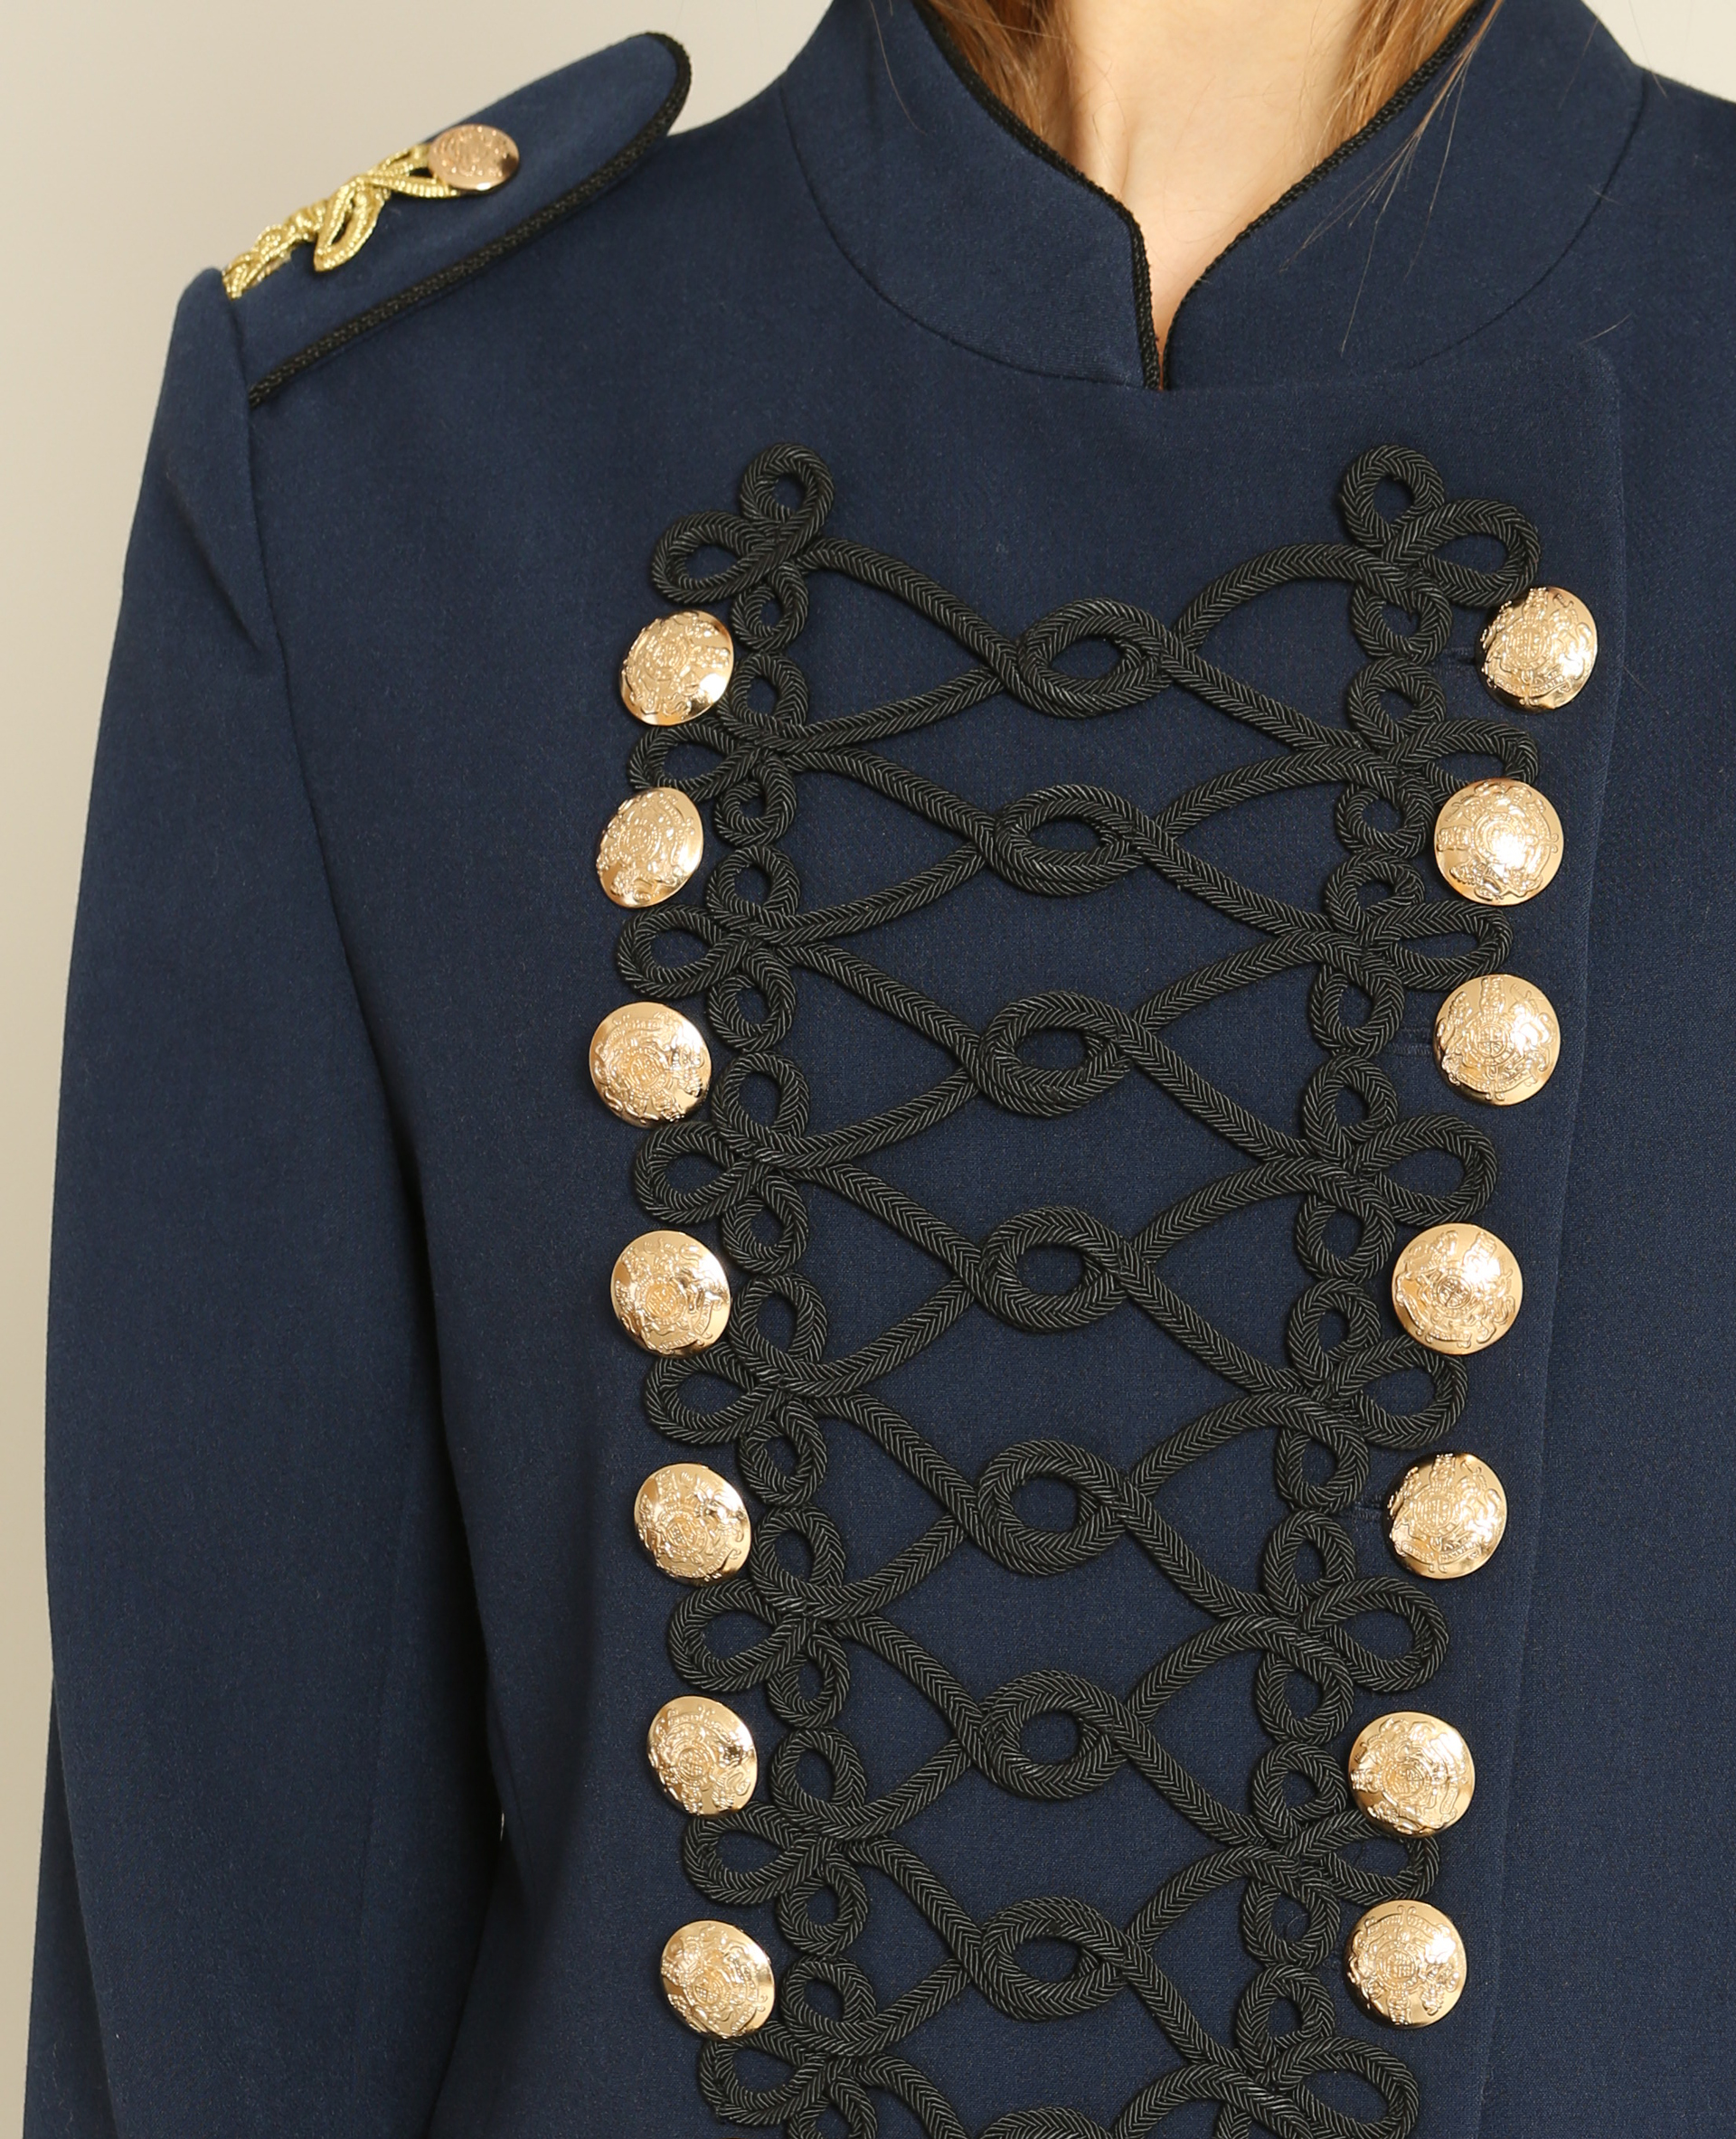 manteau militaire femme bleu marine